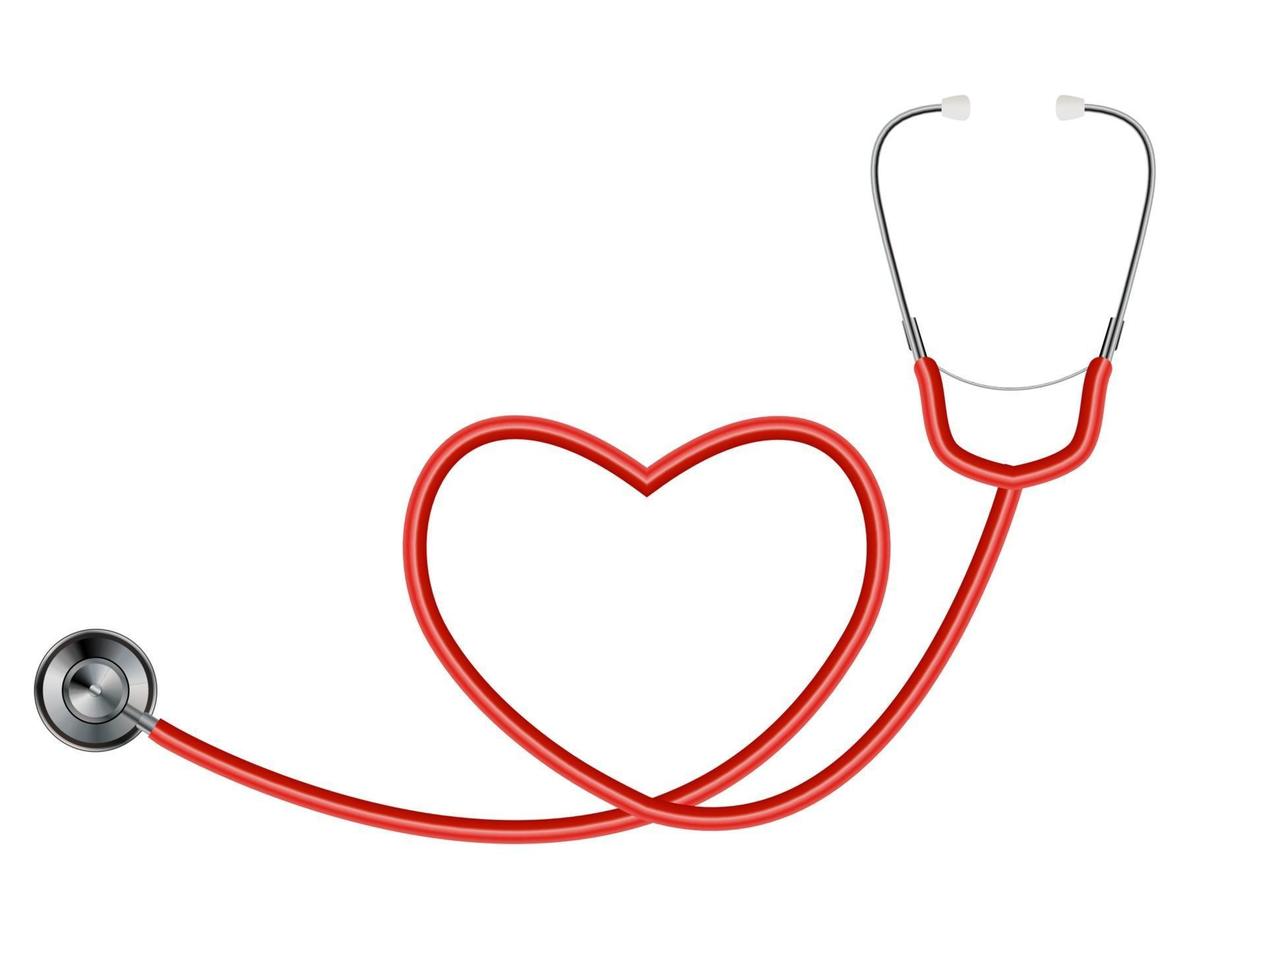 medisch hulpmiddel stethoscoop geïsoleerd op een witte achtergrond met hartsymbool. vector illustratie